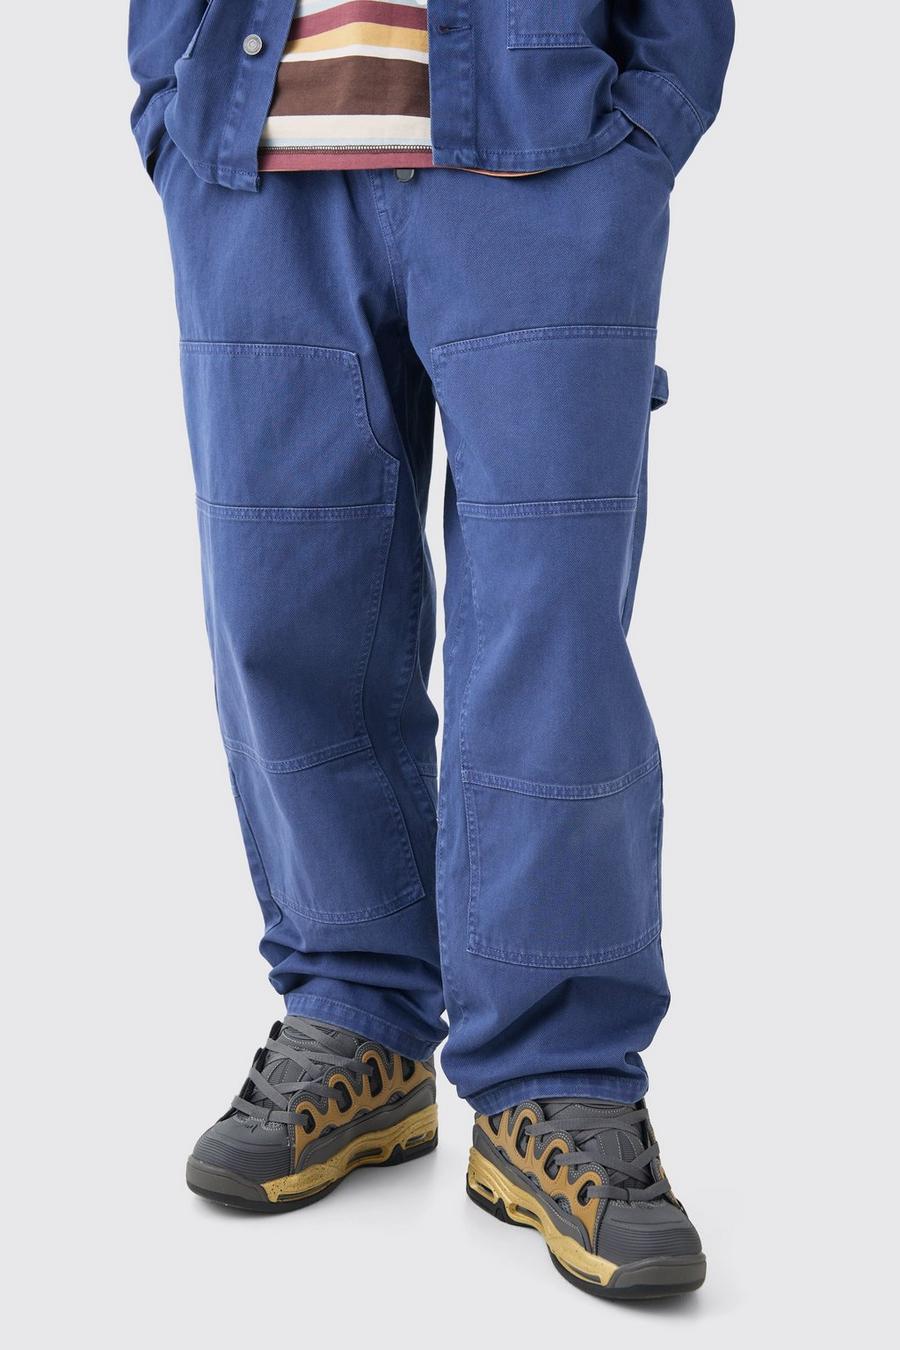 Lockere Jeans mit elastischem Bund in Dunkelblau, Dark blue